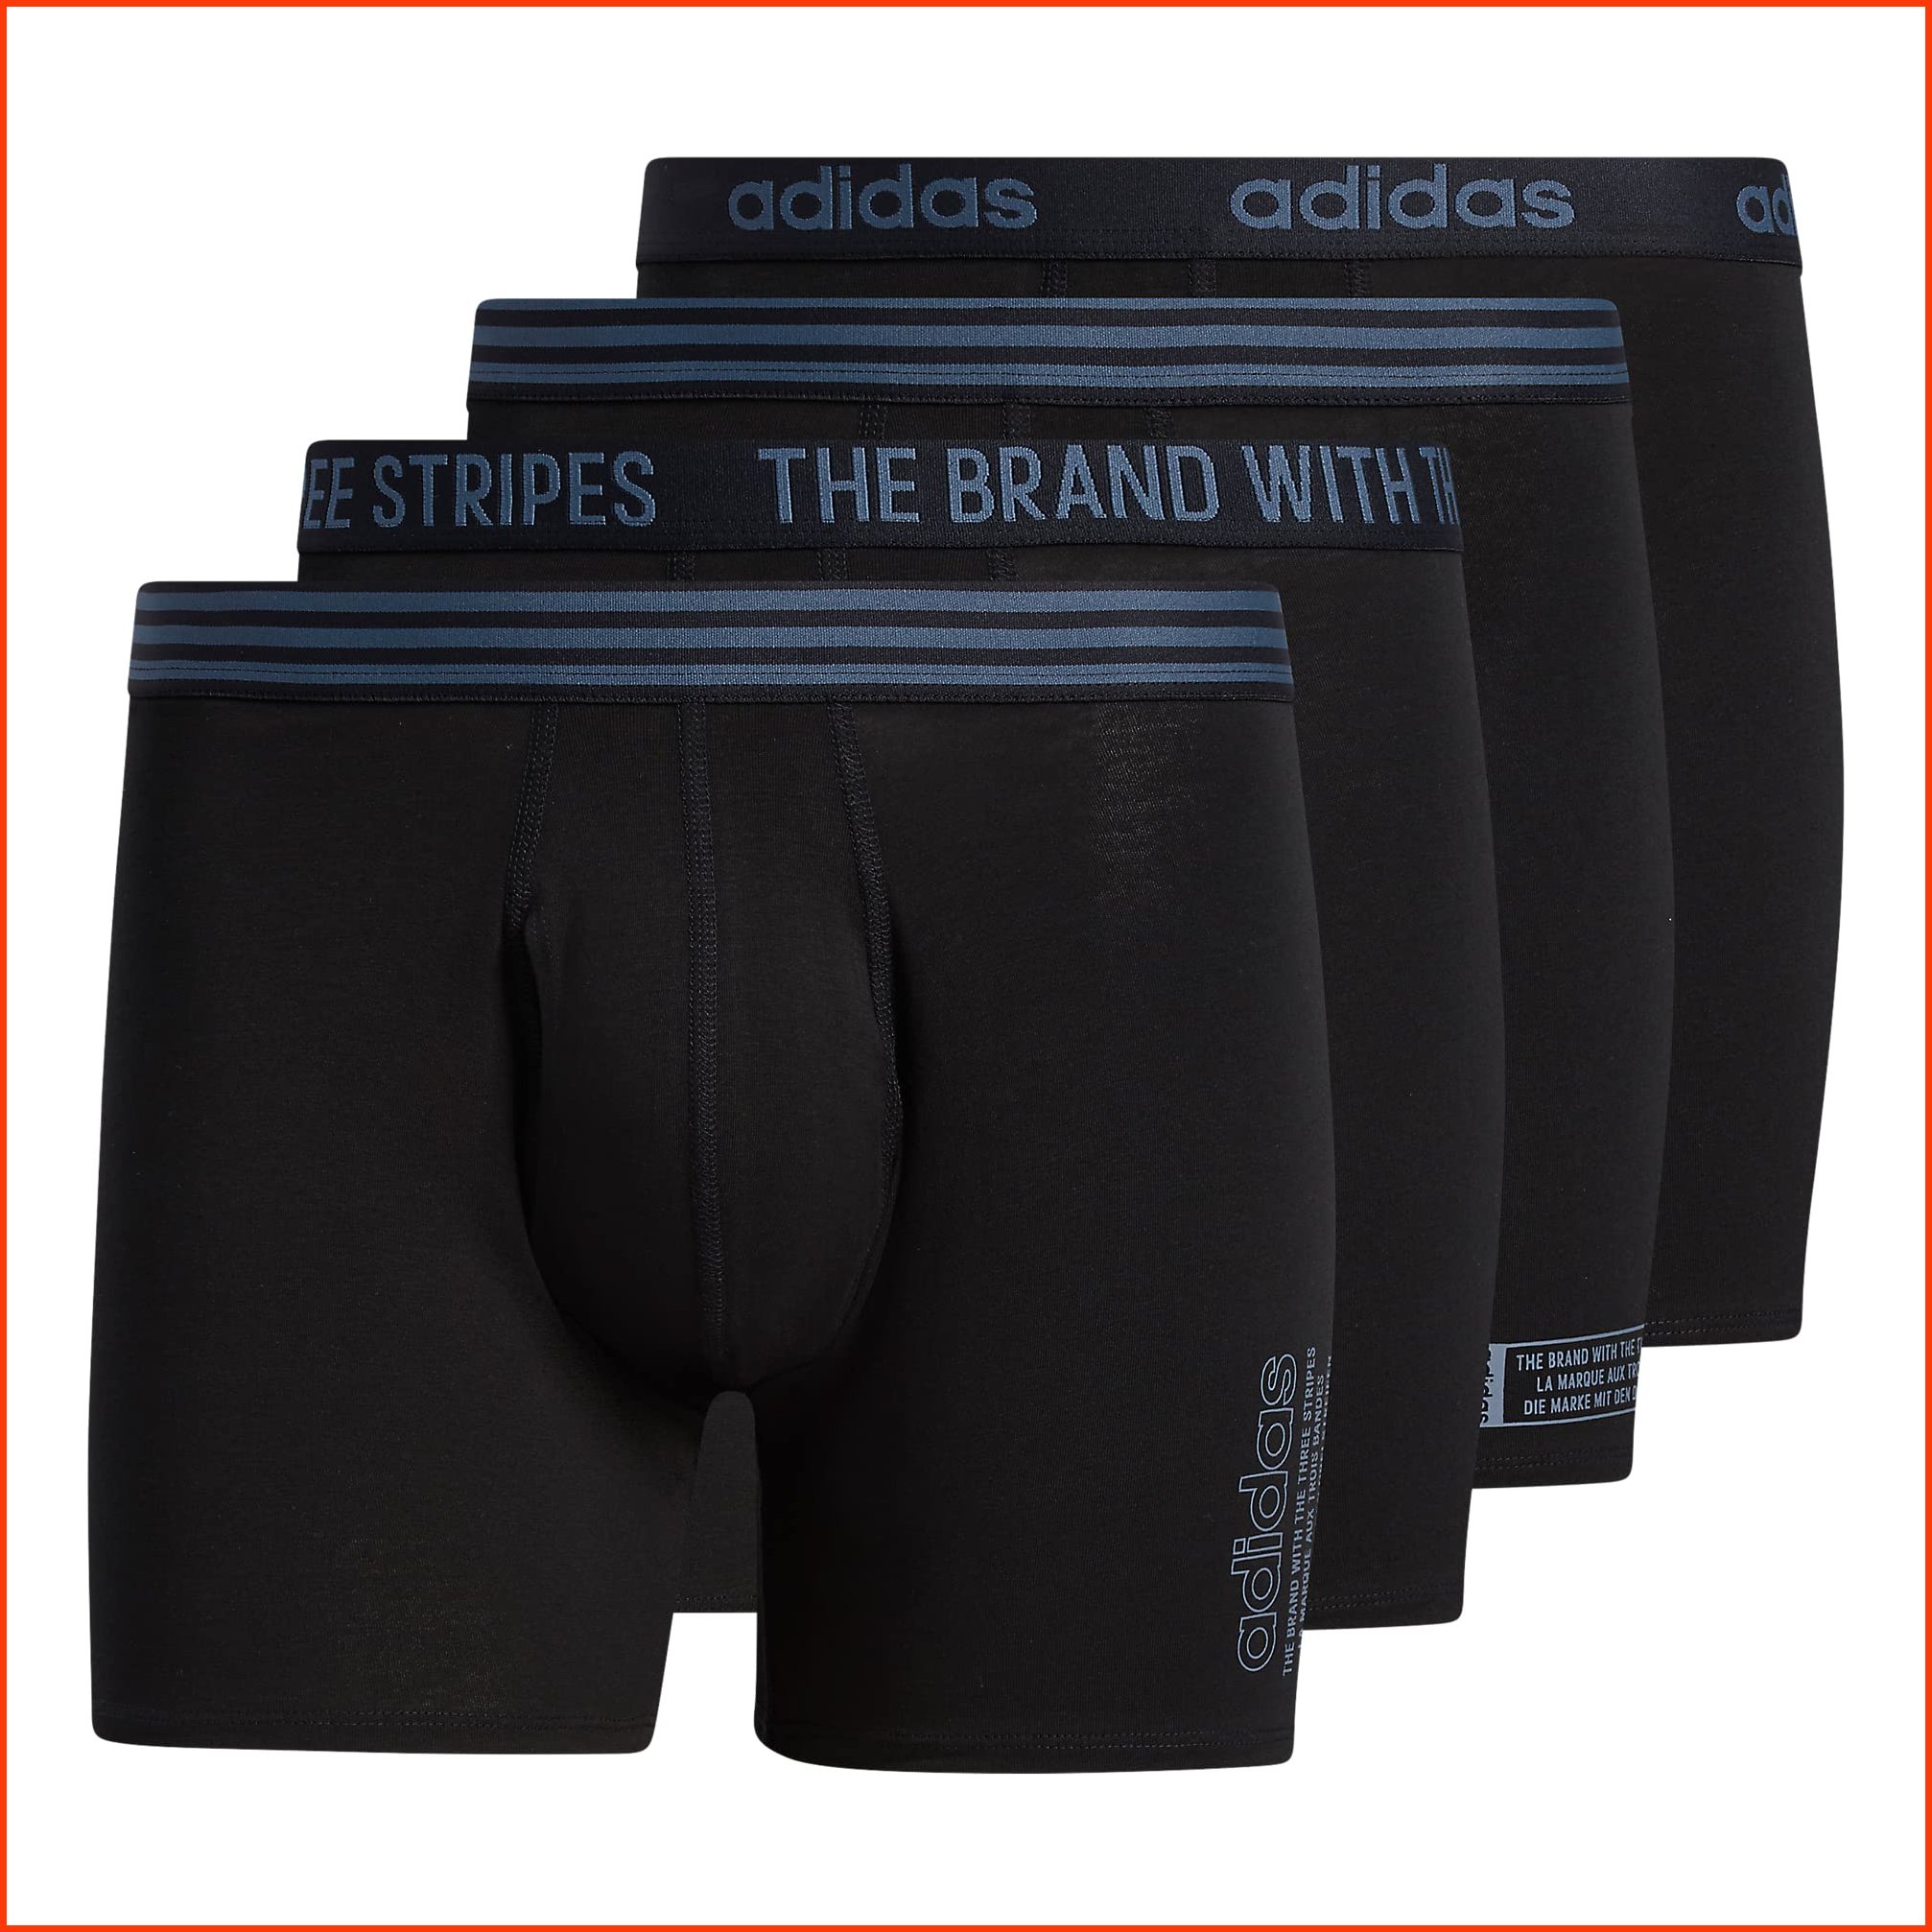 並行輸入品adidas Mens Core Stretch Cotton Boxer Brief Underwear 4-Pack BlackOnix Grey Large